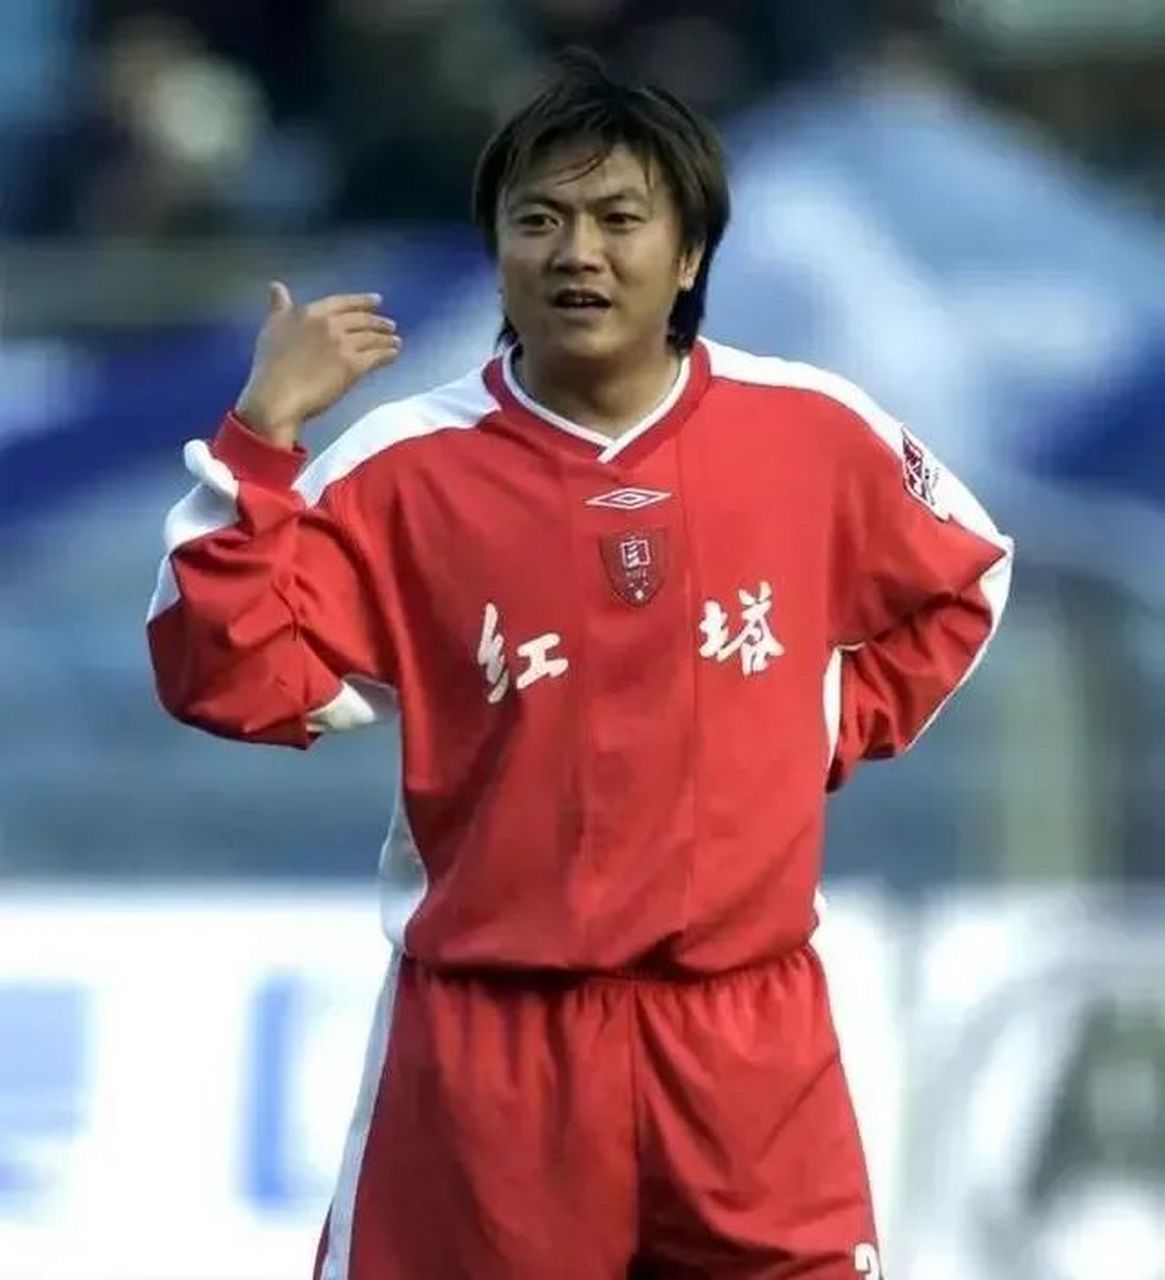 中国足球传奇:魏群,助攻之翼,远射之王  中国足球的历程虽然曲折,但在